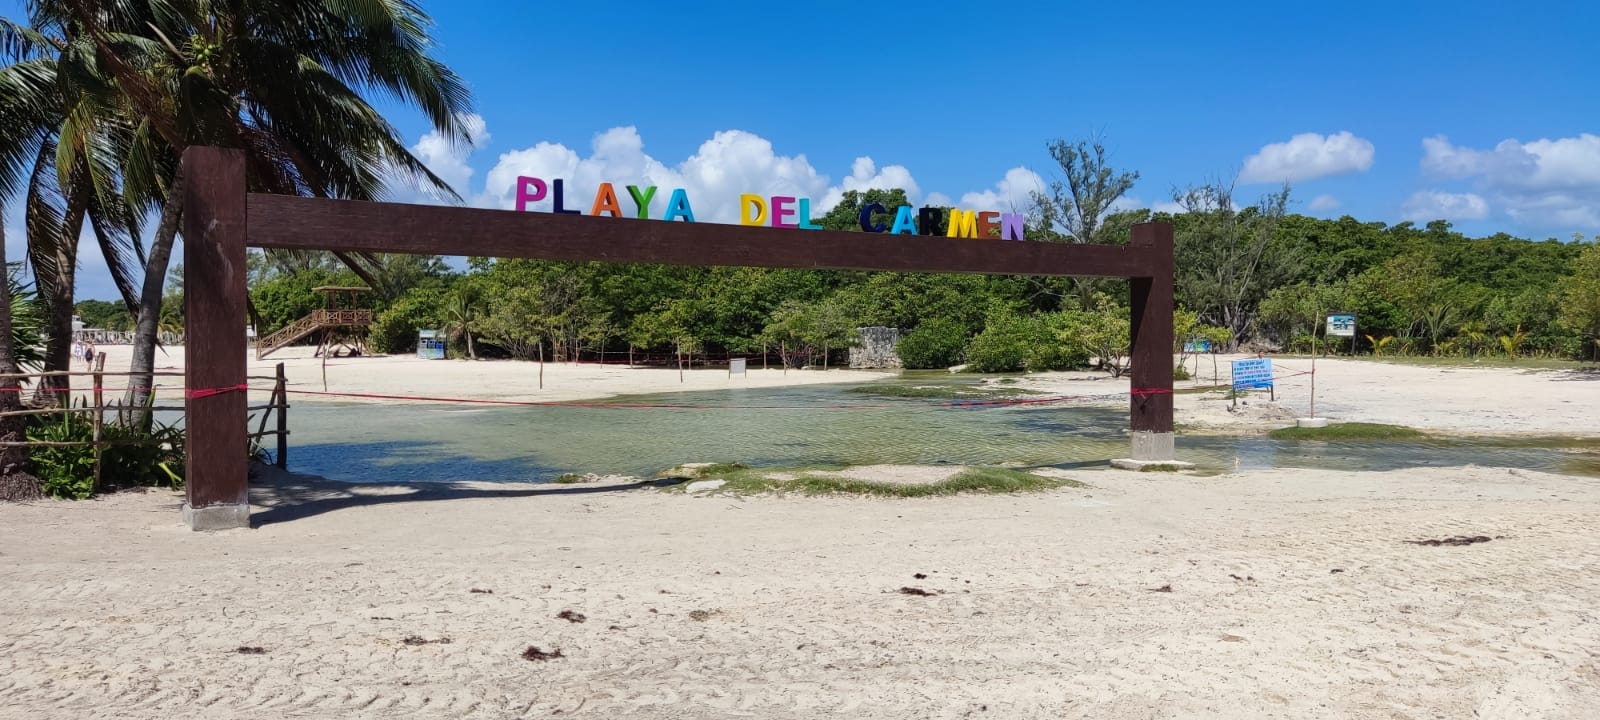 Ambientalista recrimina a turistas el dejar basura en cenotes de Playa del Carmen